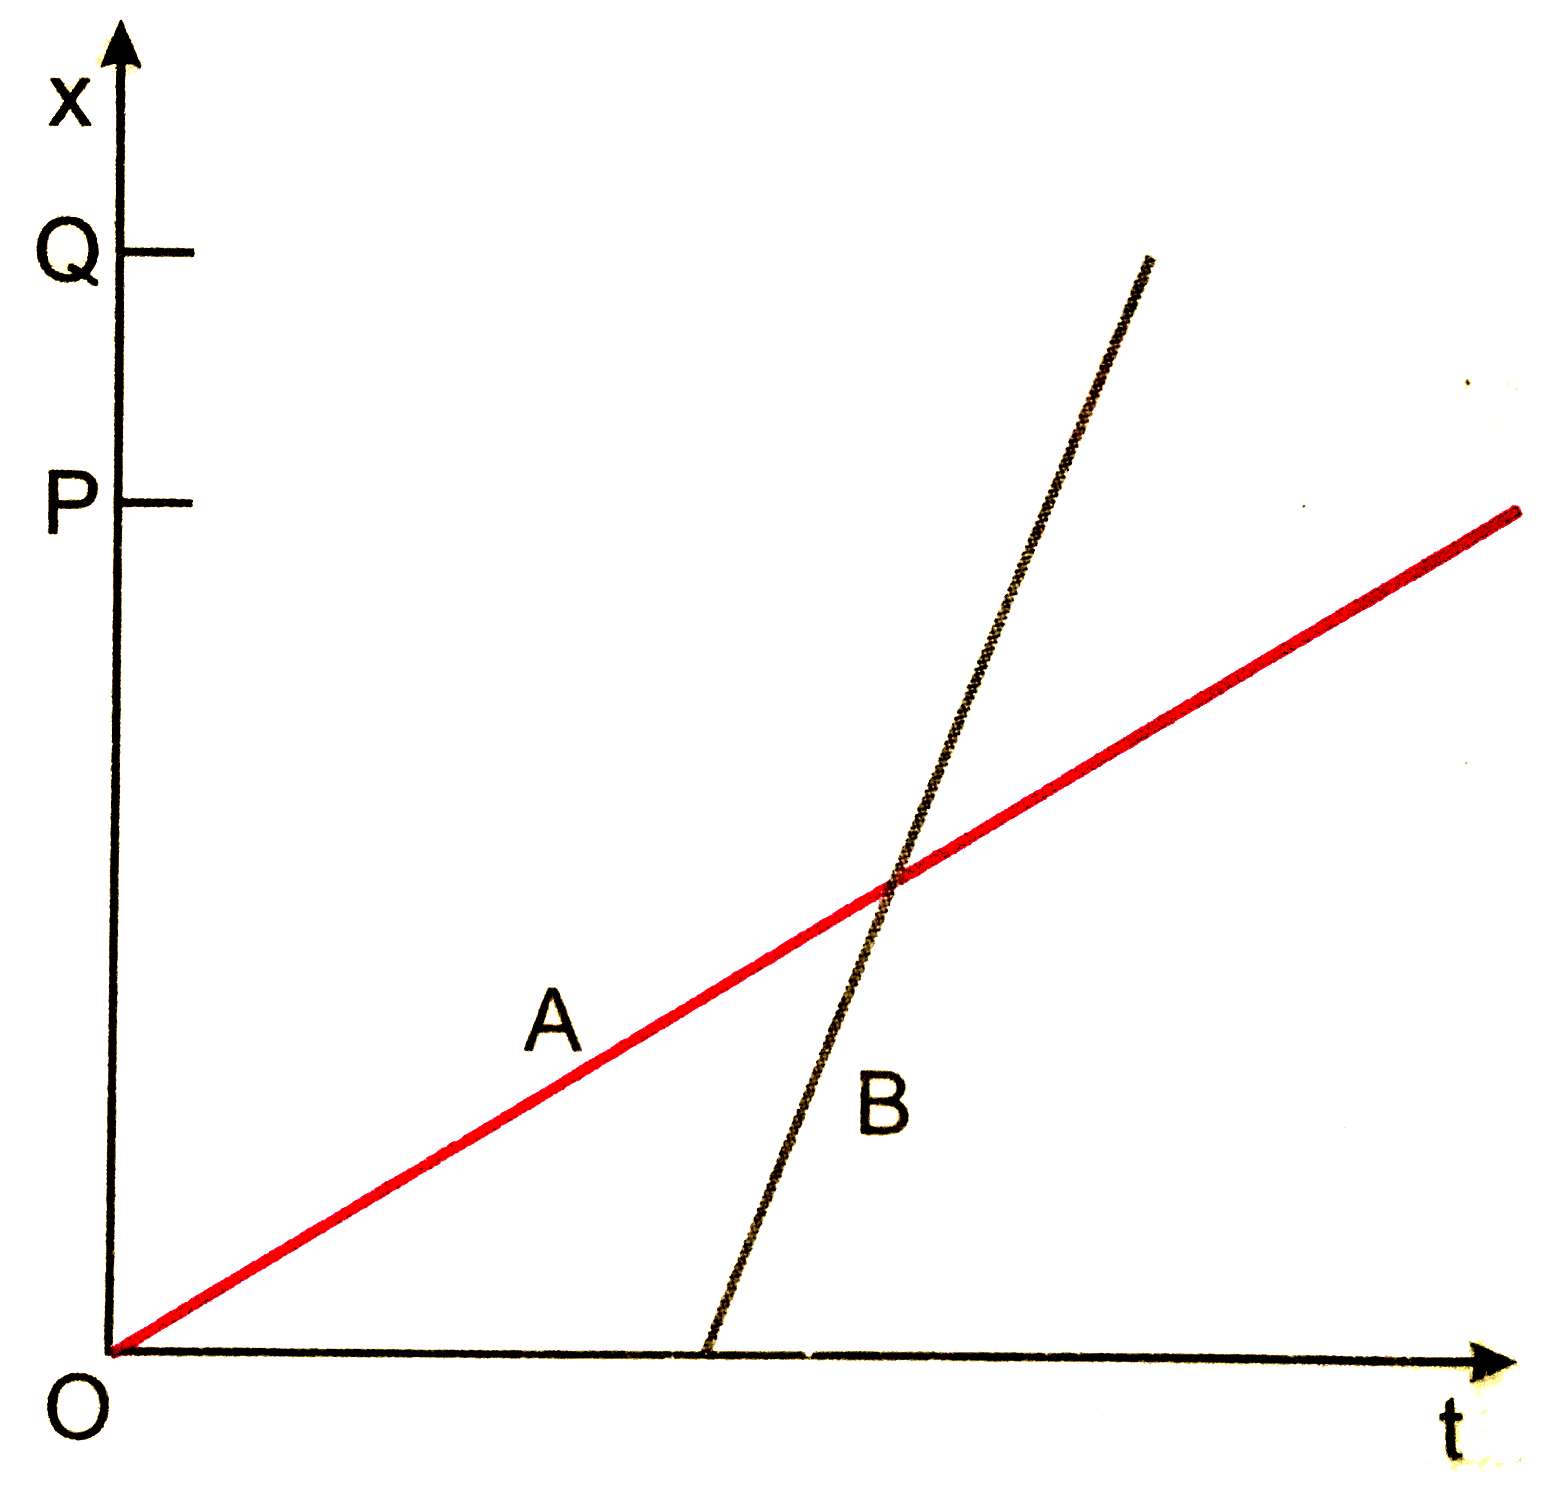 दो बच्चे A व B अपने विधालय O से लौटकर अपने - अपने घर क्रमशः P तथा Q को जा रहे है उनके स्थिति - समय (x-t) ग्राफ चित्र 3.45 में दिखाए गए है । नीचे लिखे कोष्ठकों में सही प्रविष्टियों को चुनिए :   B/A की तुलना में A/B विधालय से पहले चलता है |